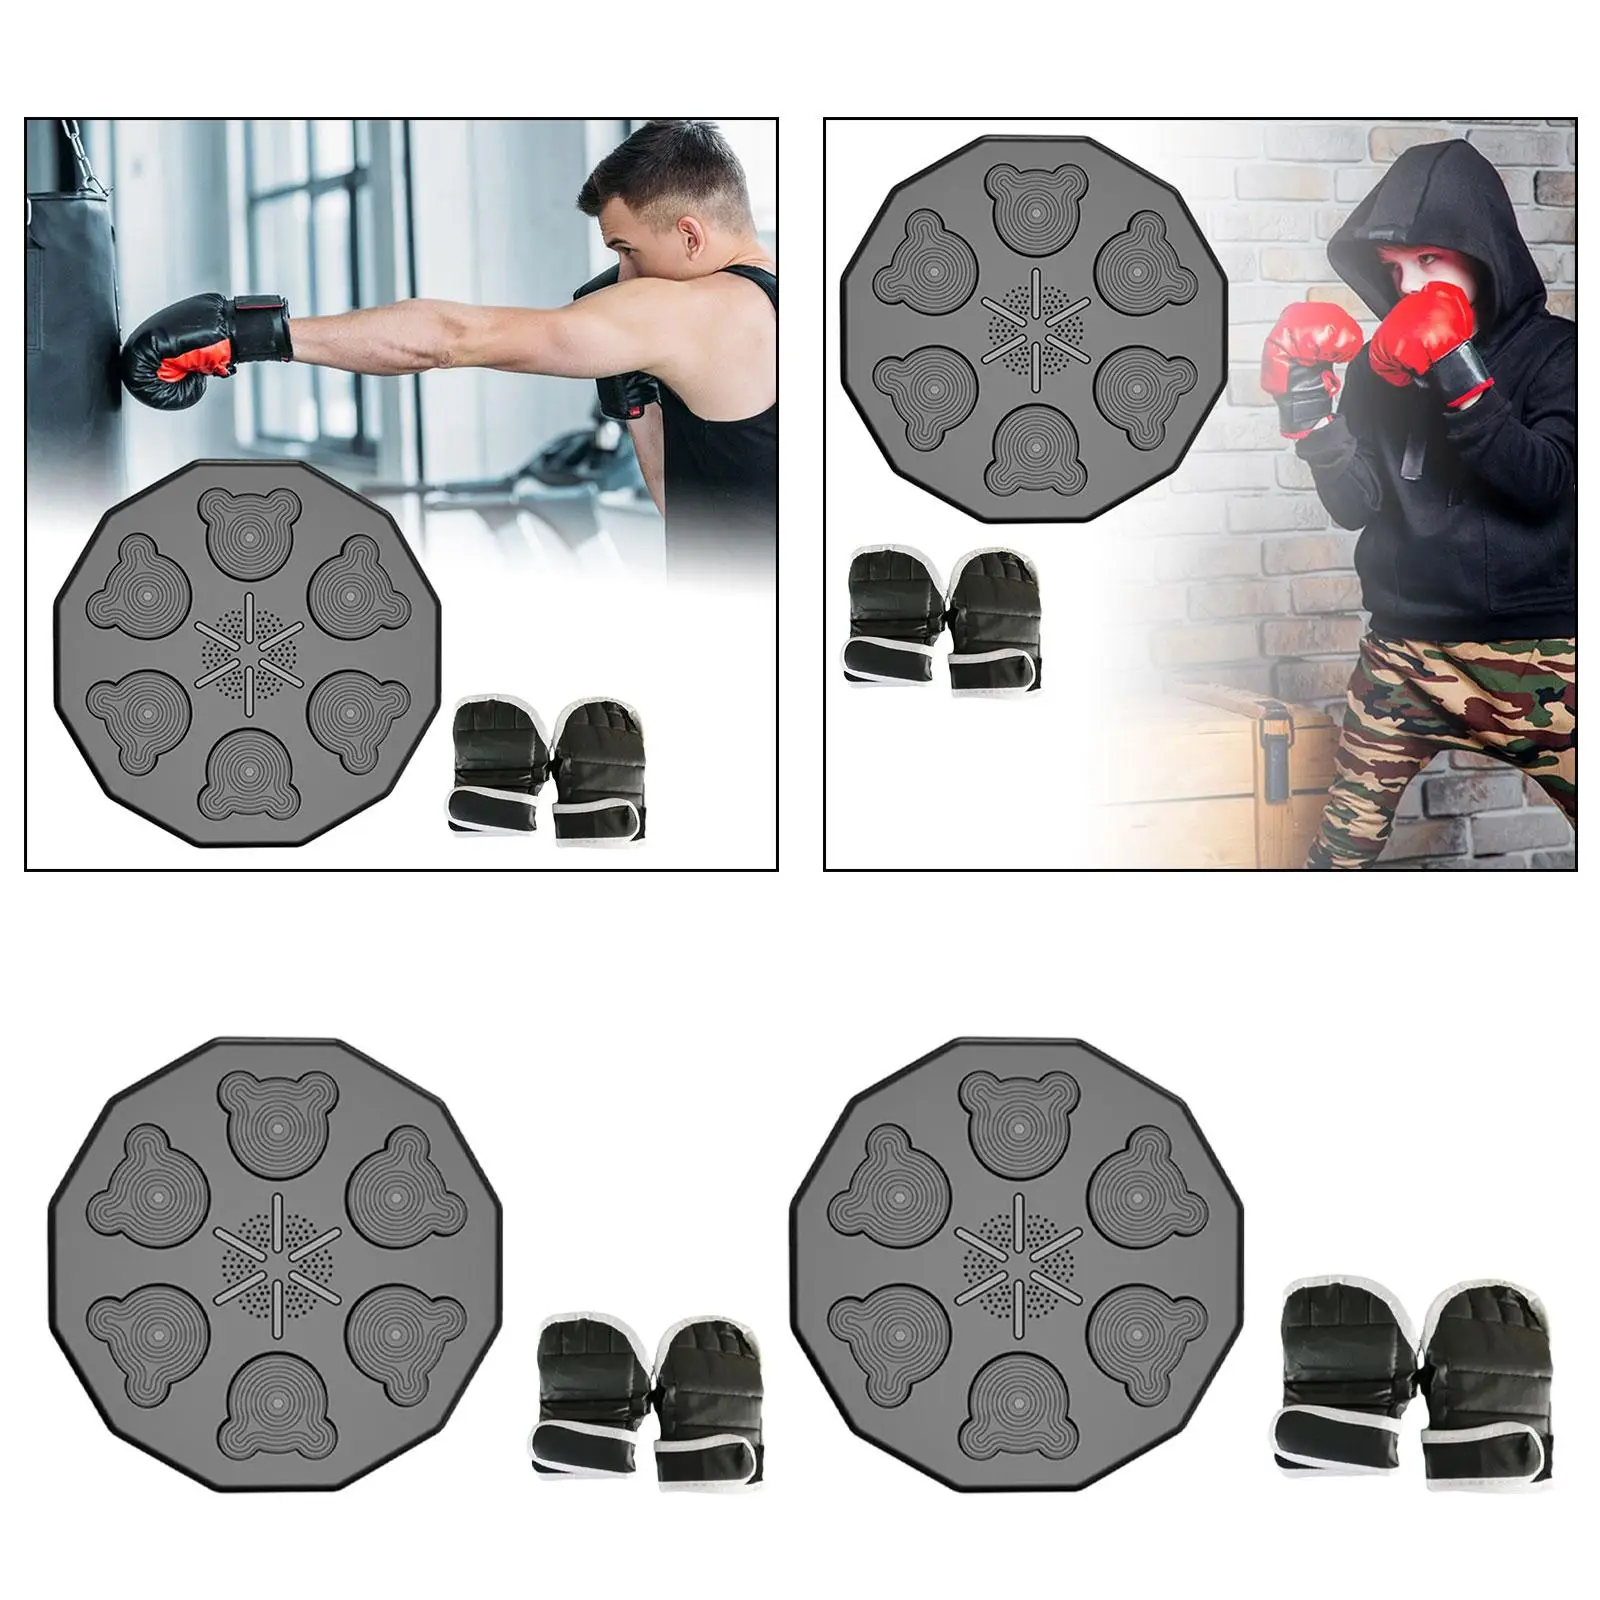 Оборудование для занятий музыкальным боксом, боксерский коврик с RGB-подсветкой и боксерские перчатки, Изображение 3